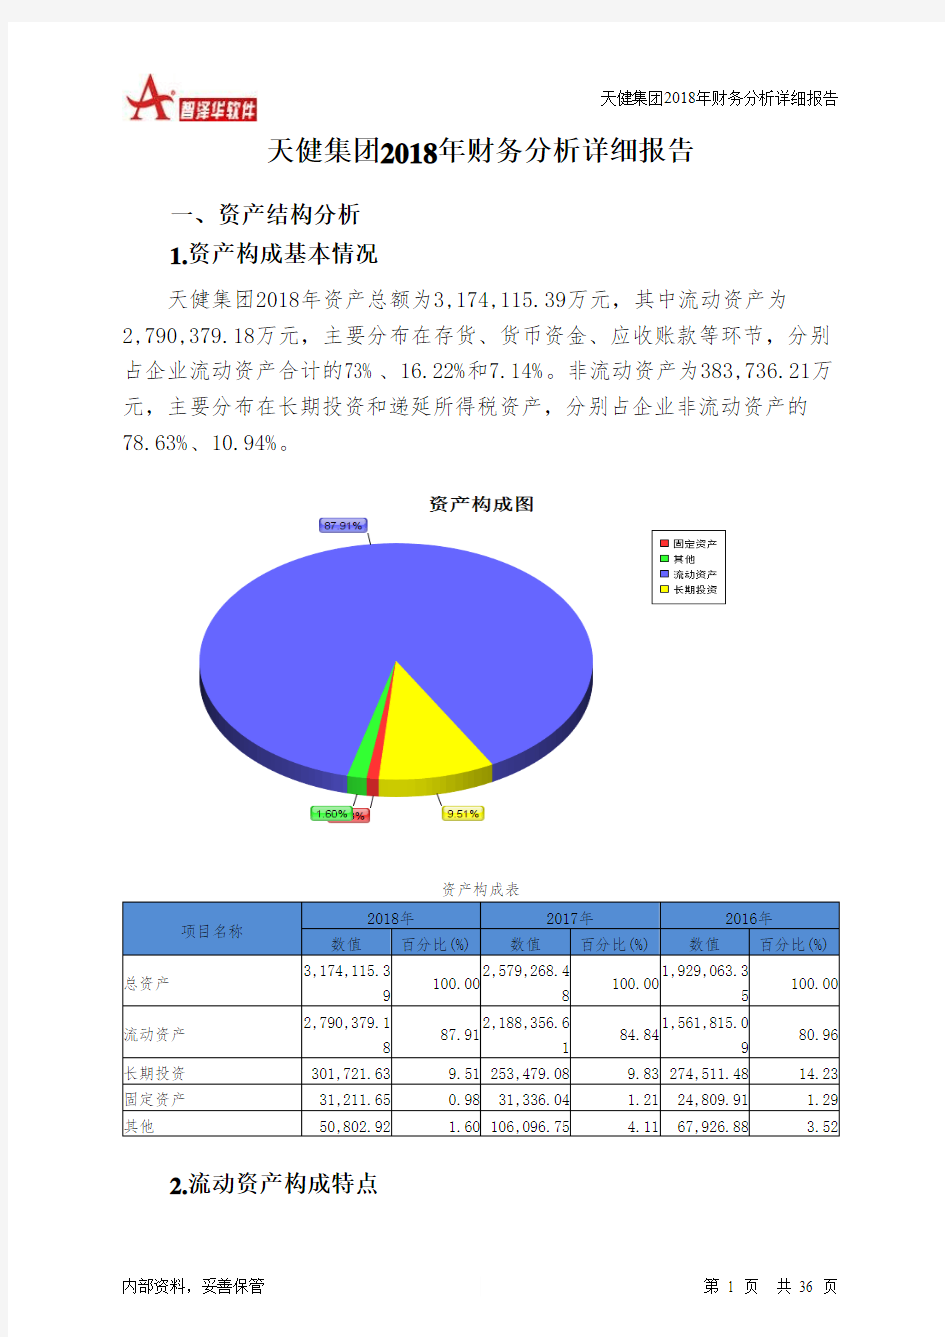 天健集团2018年财务分析详细报告-智泽华